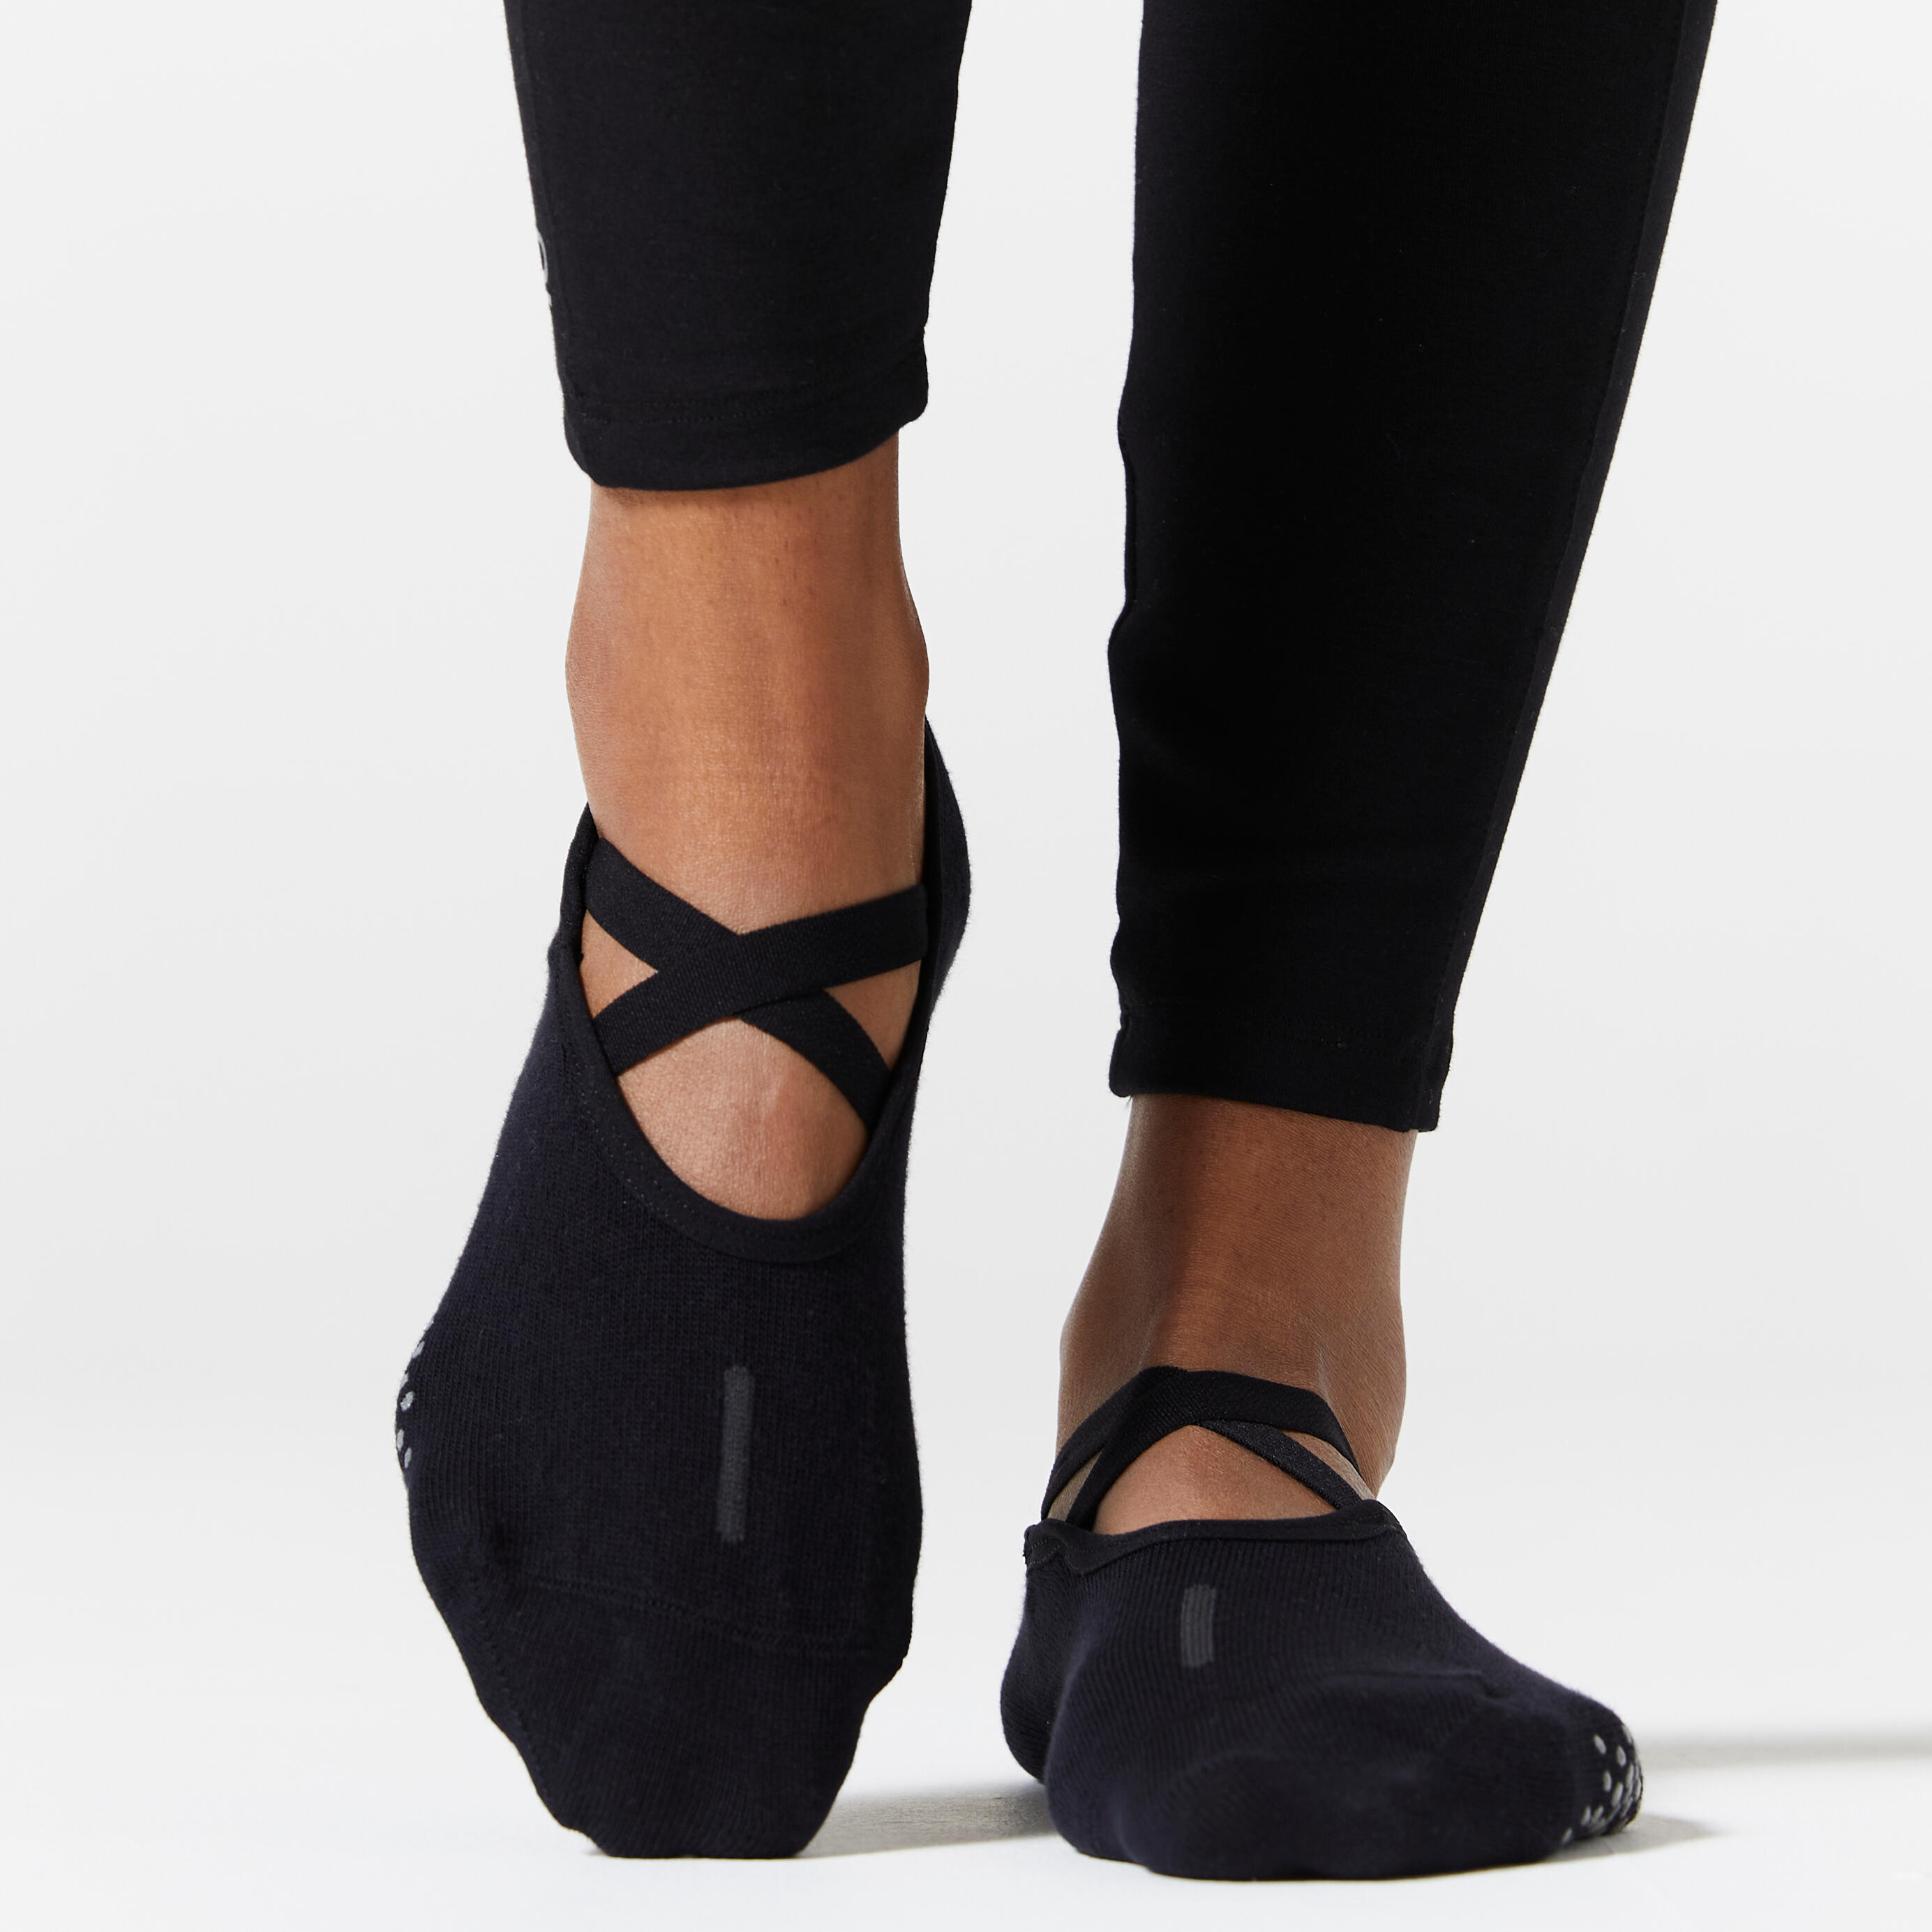 MRIGOL Cotton Ladies Yoga Socks Anti-Slip for Fitness Gym Grip Sock Ballet  Socks Backless Yoga Socks Pilates Socks Sports Socks